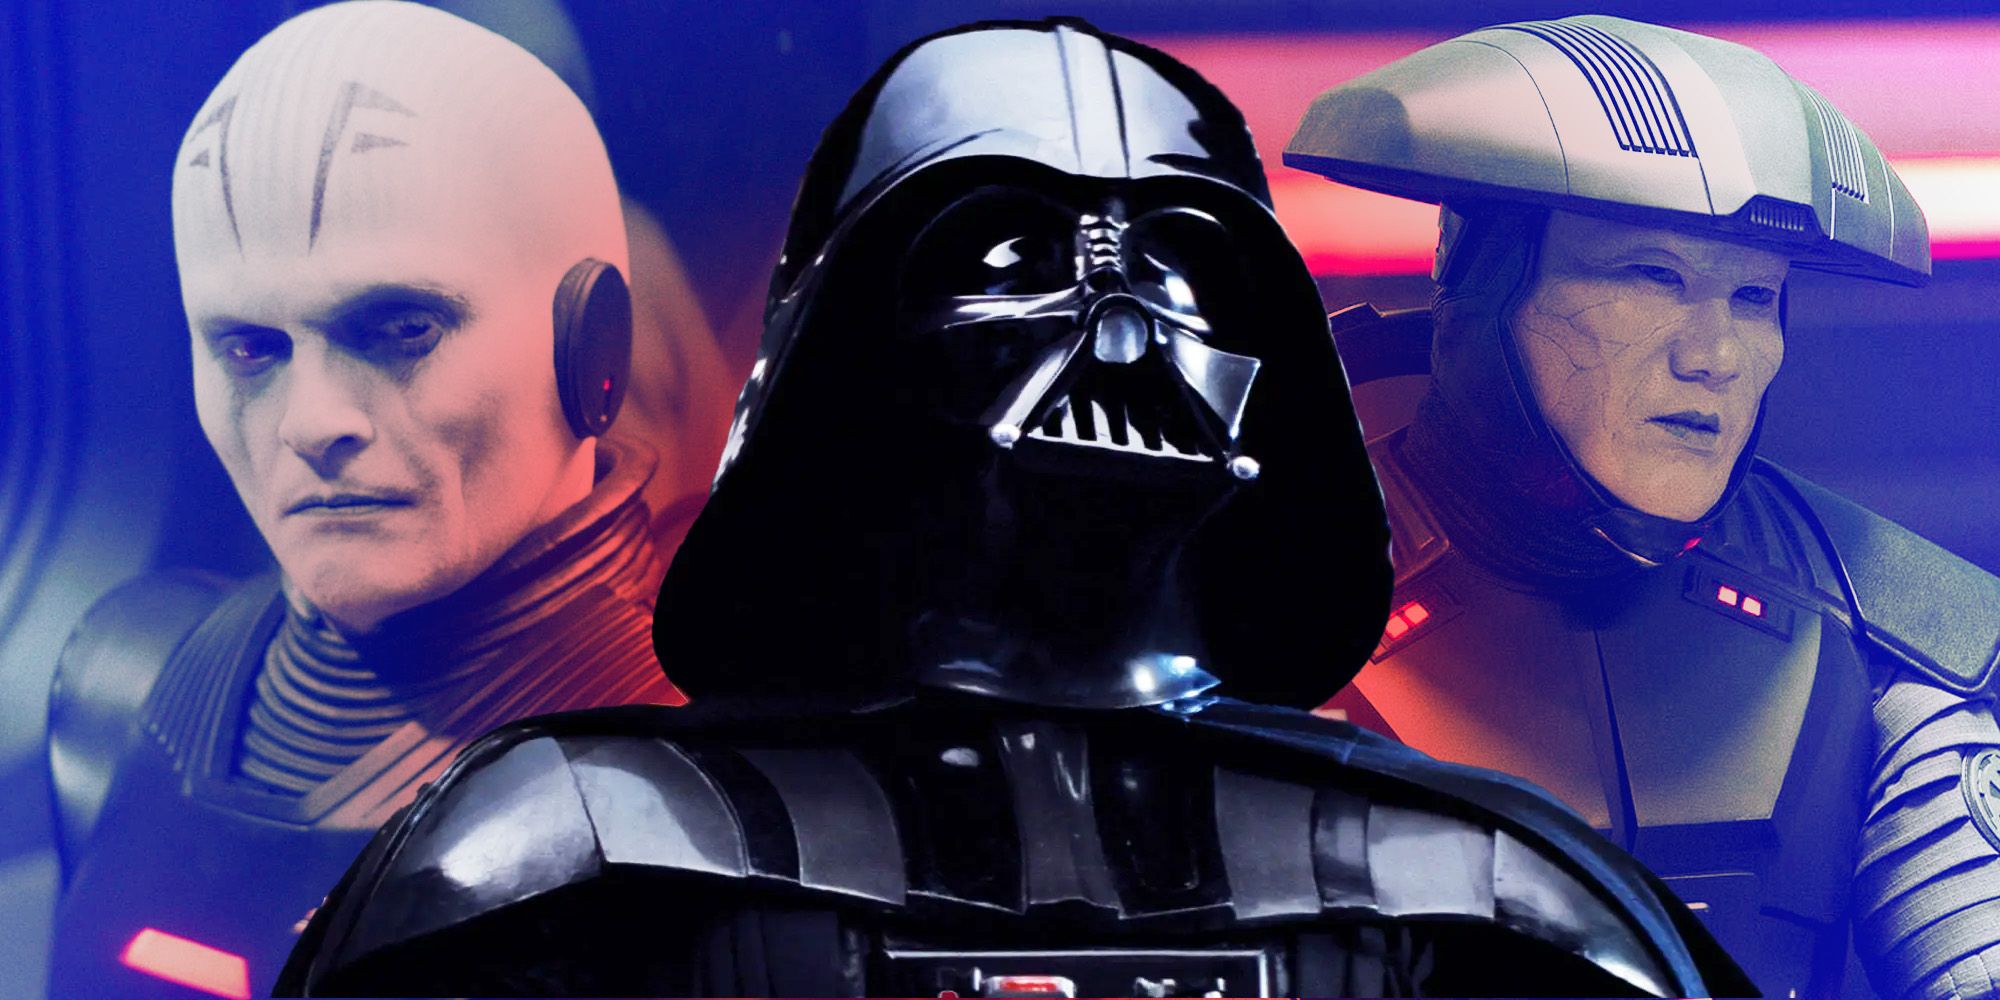 Los inquisidores de Darth Vader casi parecían completamente diferentes